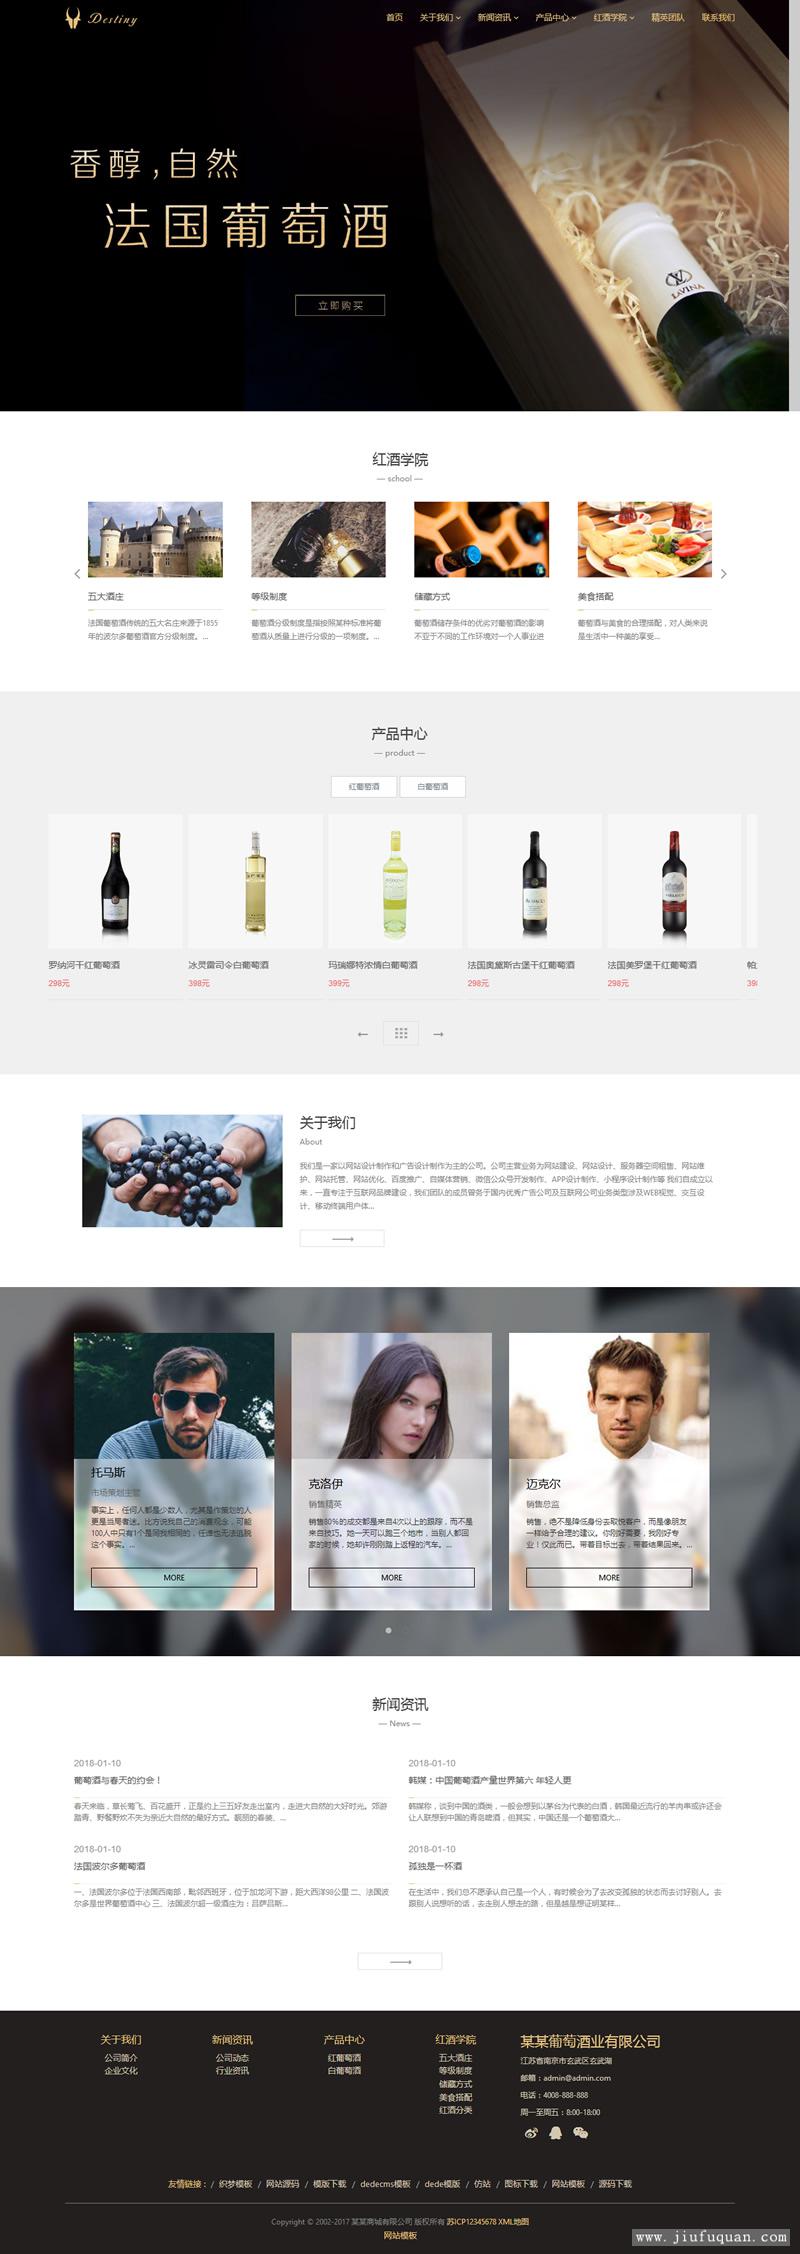 响应式酒业食品类自适应网站源码 HTML5葡萄酒织梦网站模板